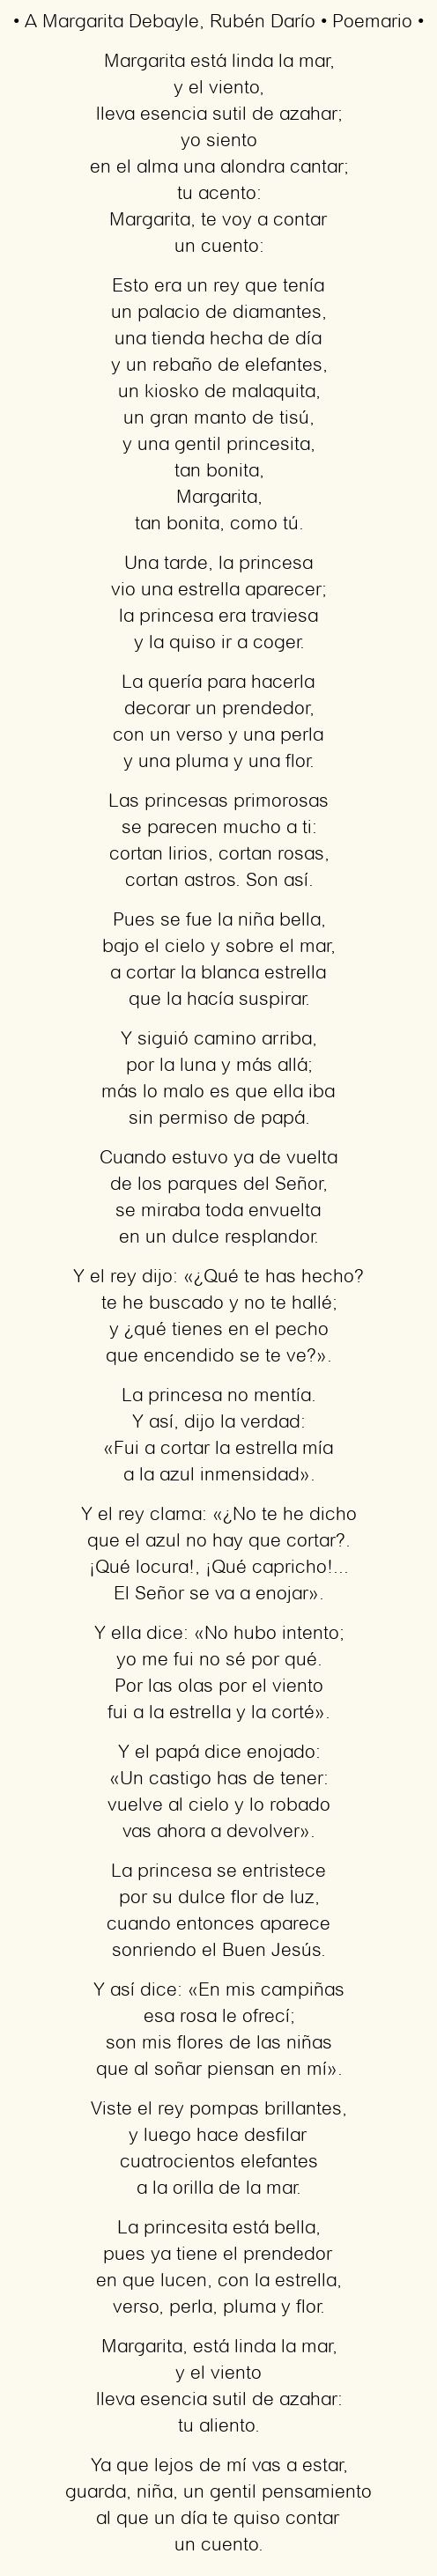 Imagen con el poema A Margarita Debayle, por Rubén Darío